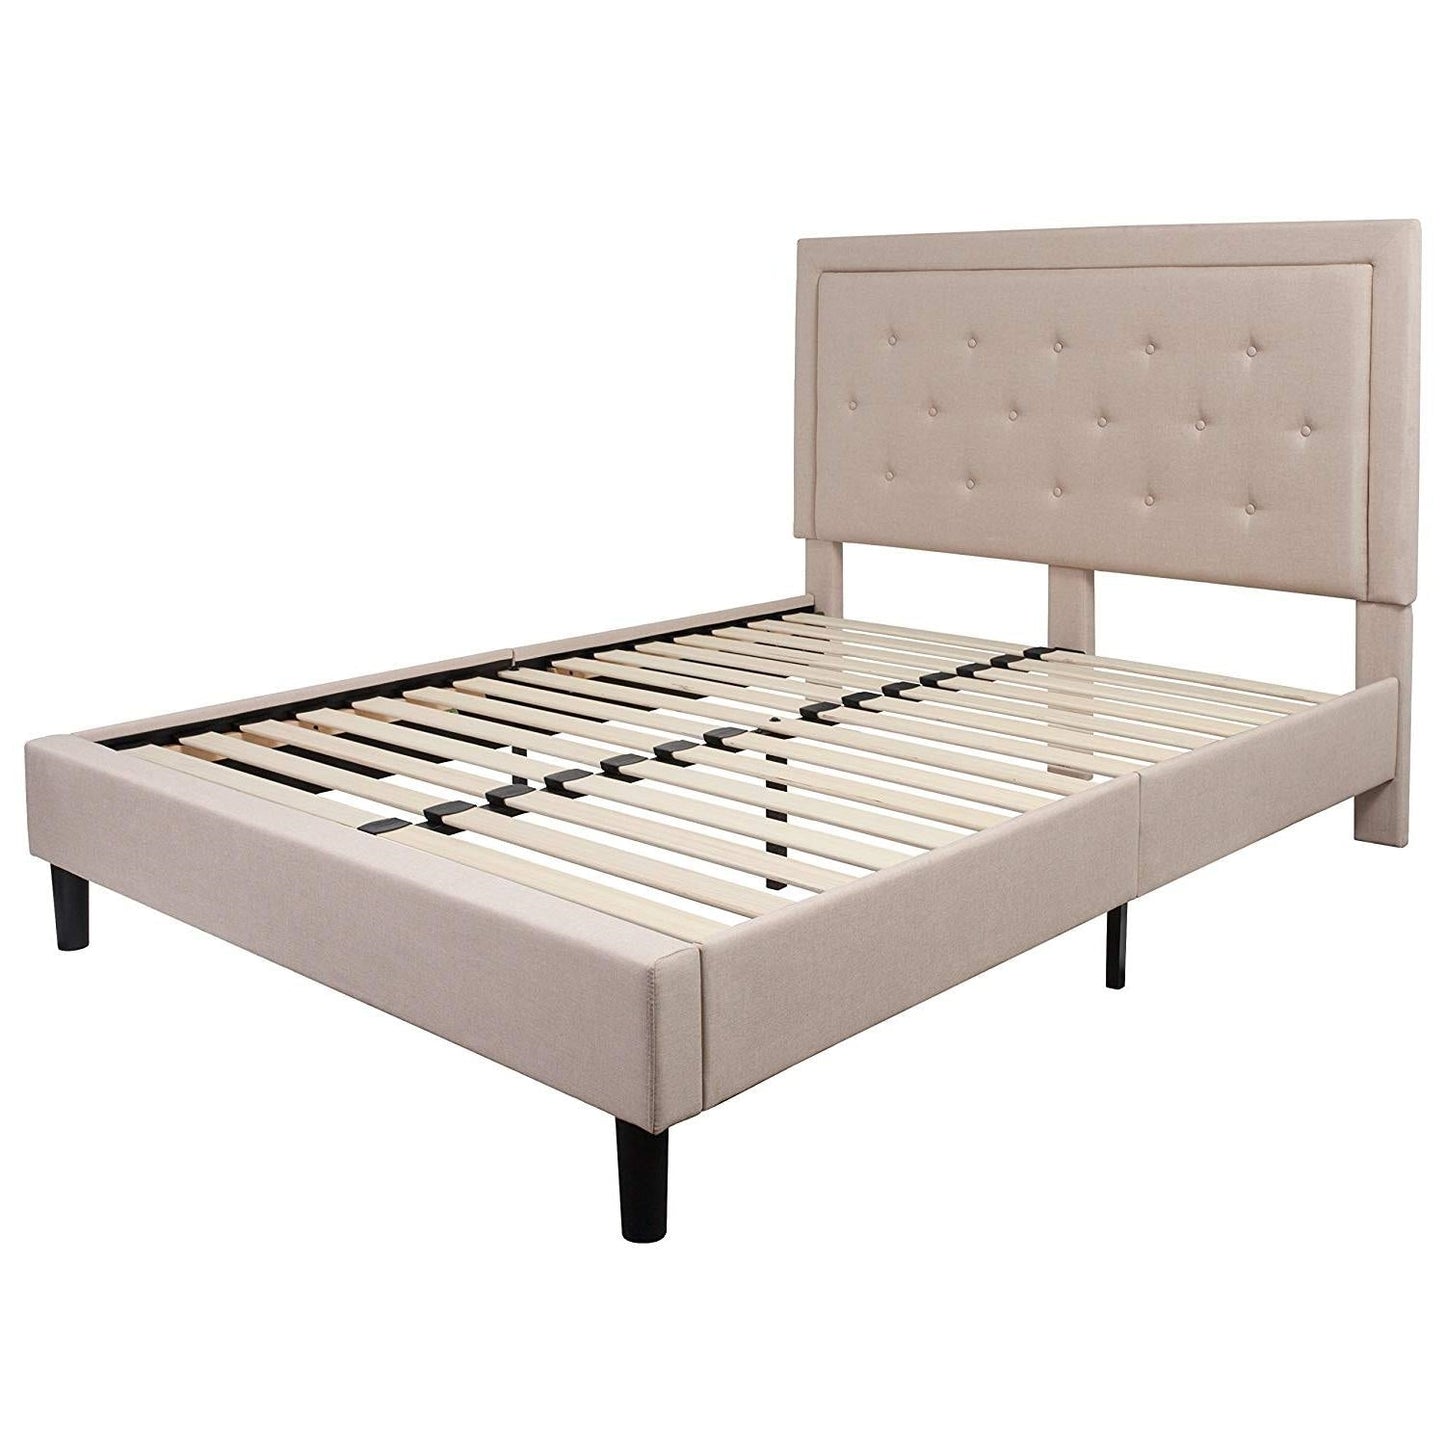 Bedroom > Bed Frames > Platform Beds - Queen Beige Upholstered Platform Bed Frame With Button Tufted Headboard